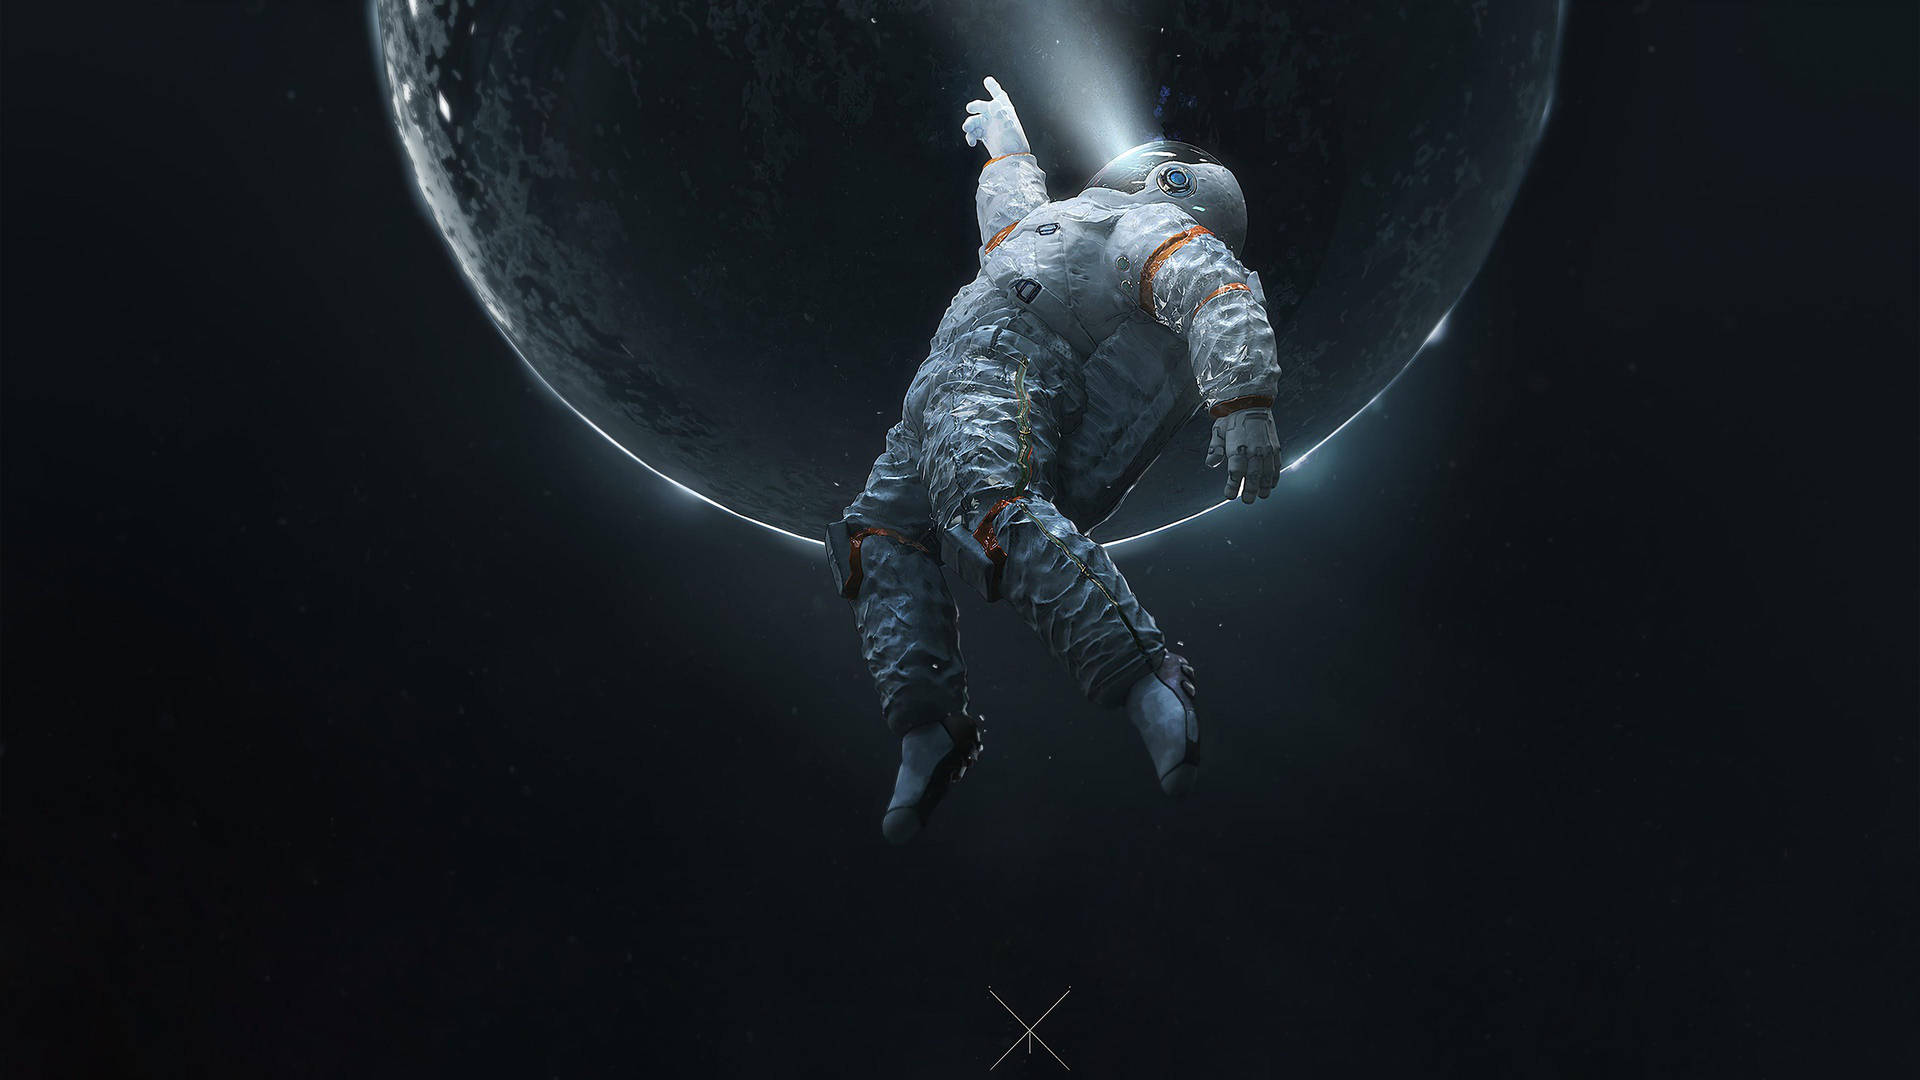 Astronaut på mission for at udforske det ydre rum i nuancer af sort og hvid Wallpaper